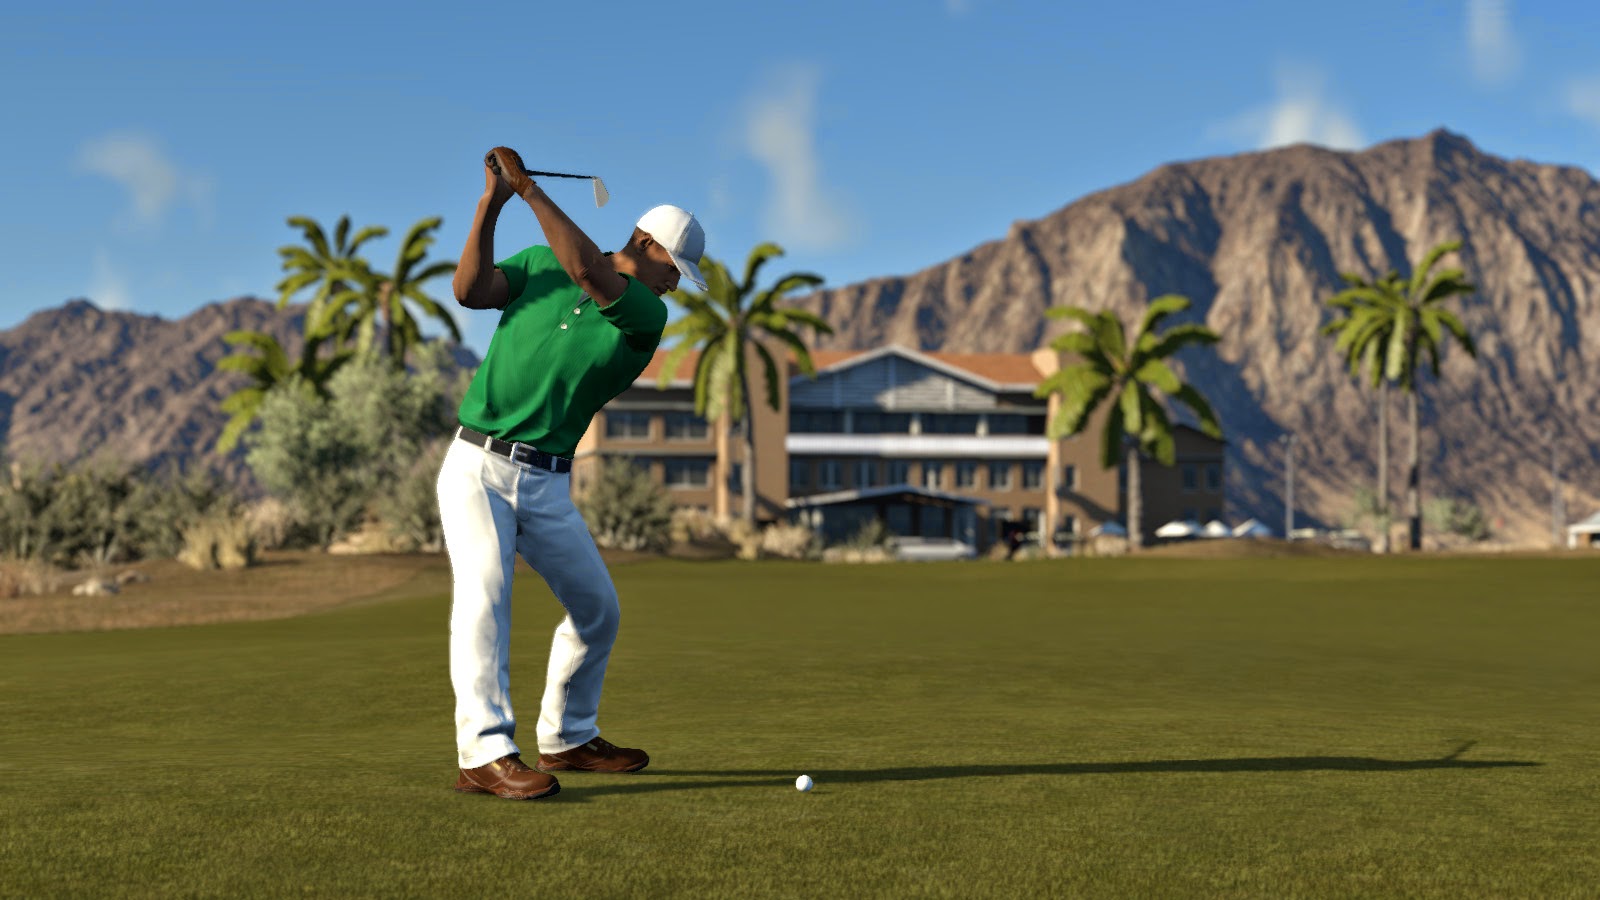 The Golf Club PC Golf Simulation